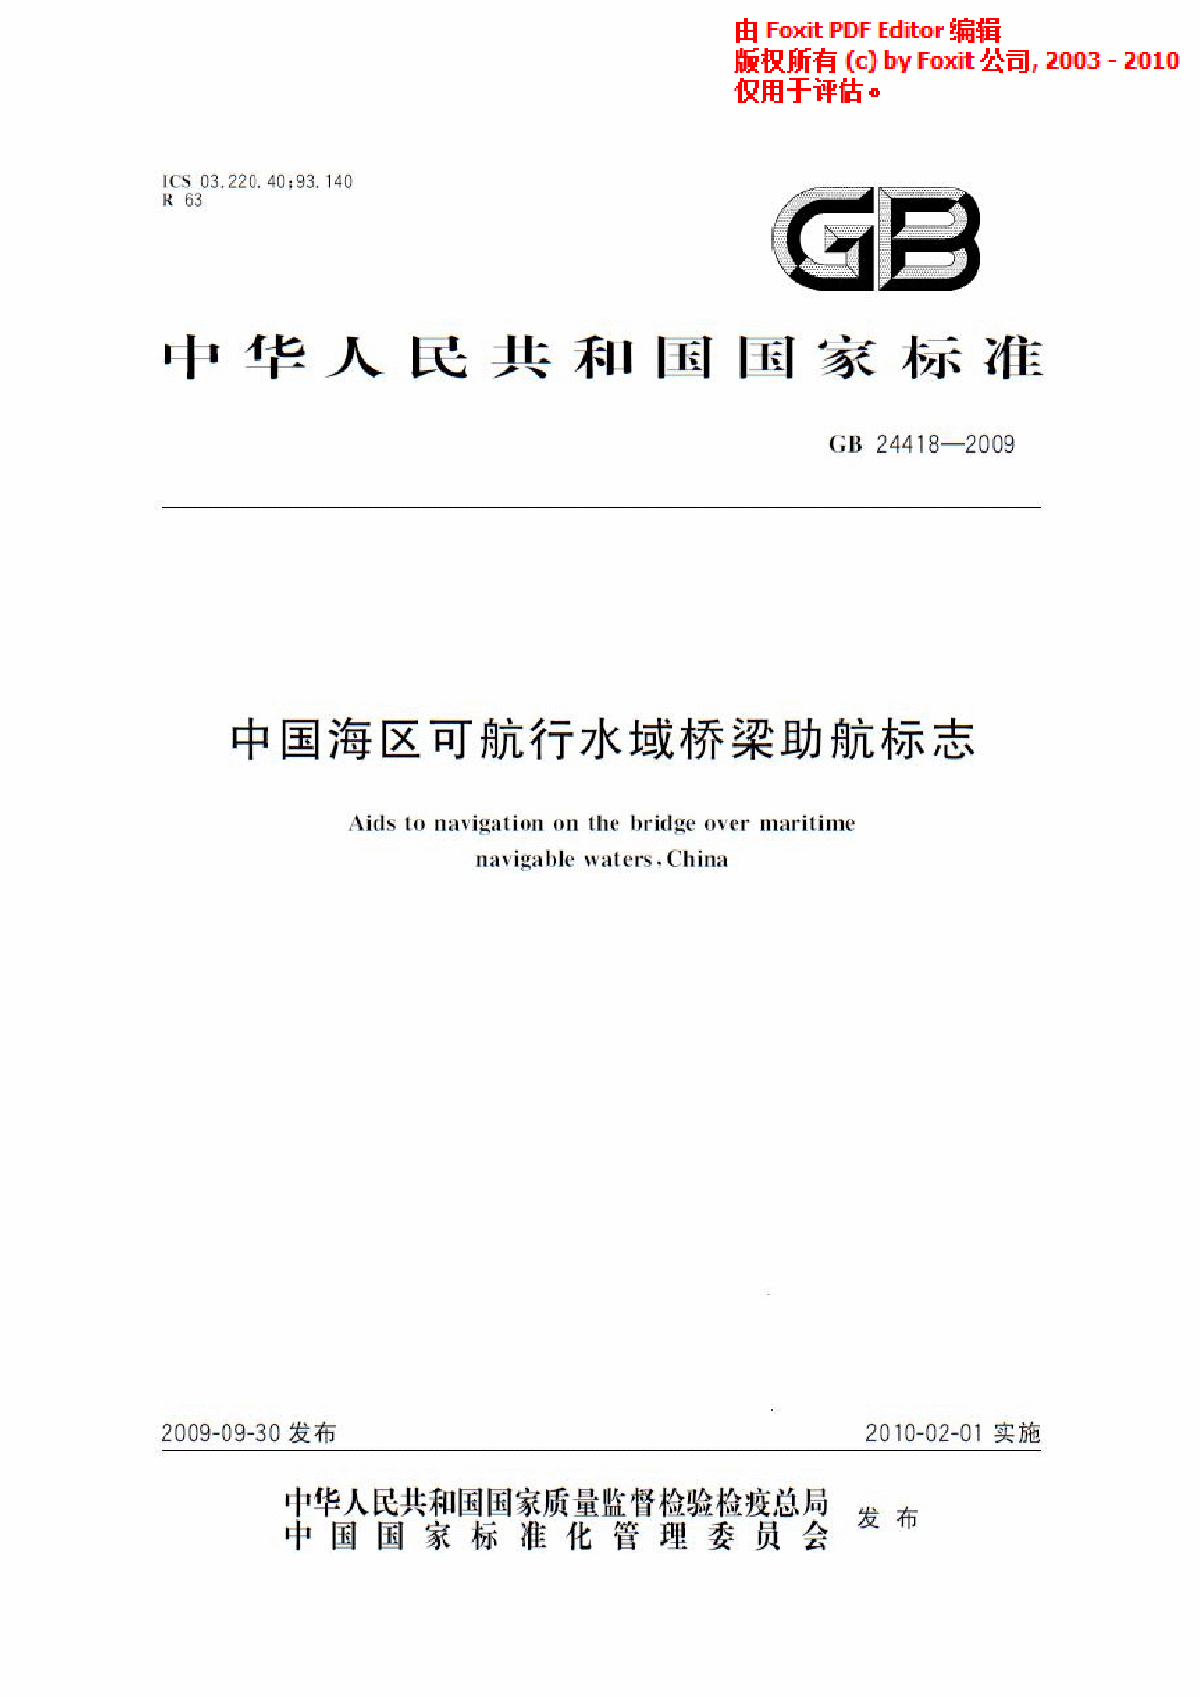 《中国海区可航行水域桥梁助航标志》(GB24418-2009)-图一